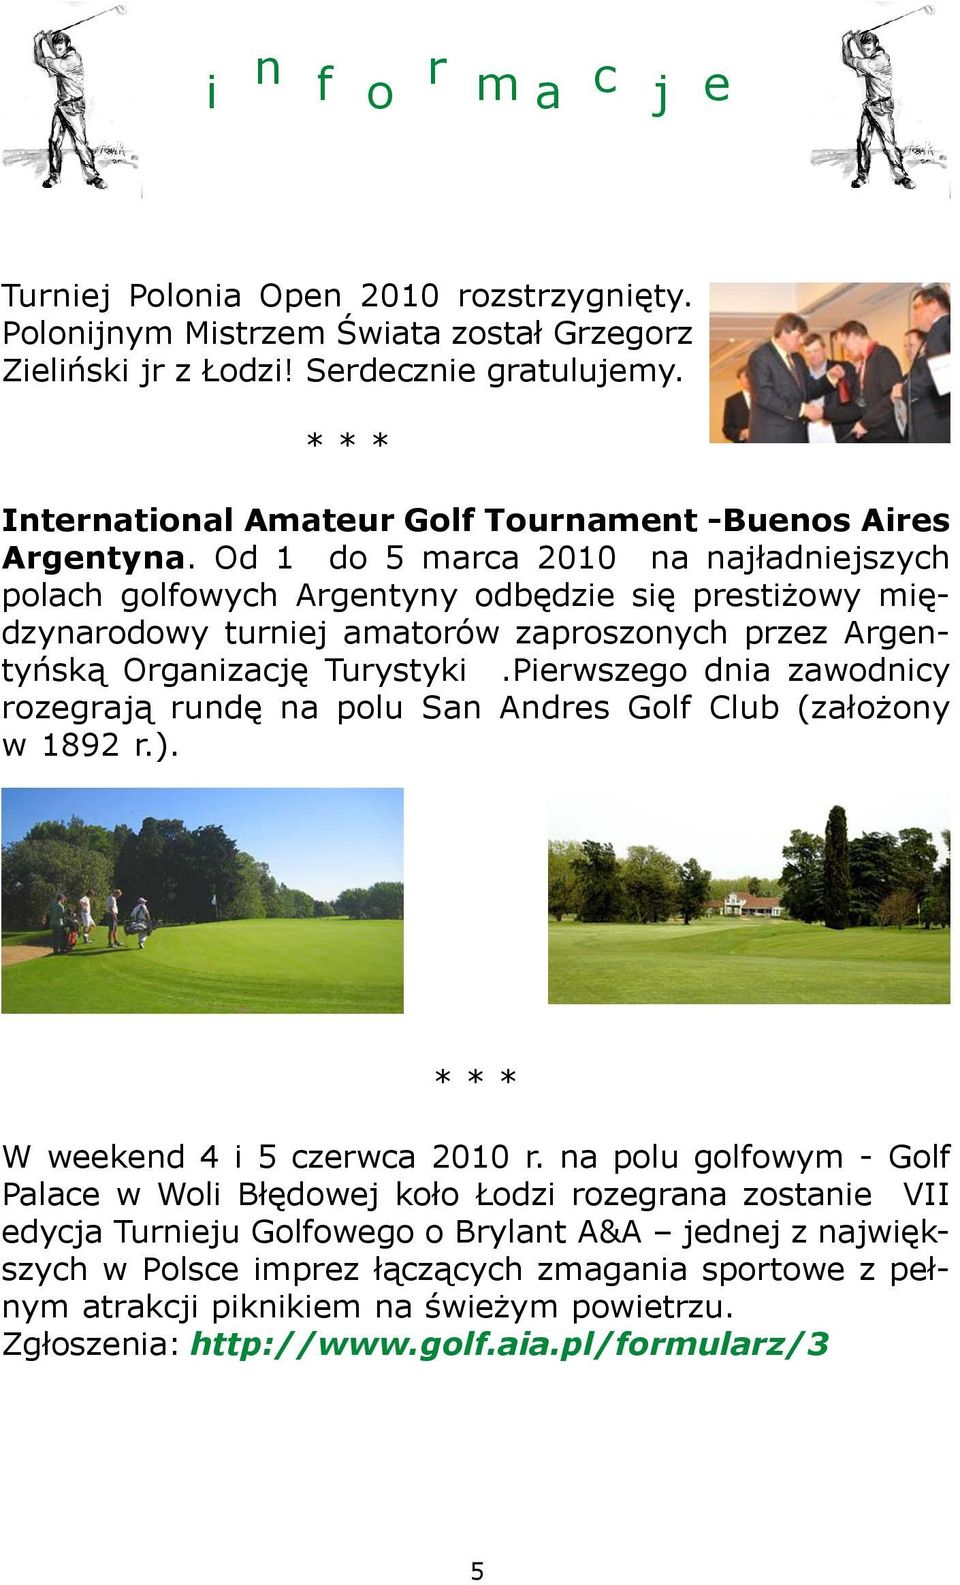 Od 1 do 5 marca 2010 na naj³adniejszych polach golfowych Argentyny odbêdzie siê presti owy miêdzynarodowy turniej amatorów zaproszonych przez Argentyñsk¹ Organizacjê Turystyki.